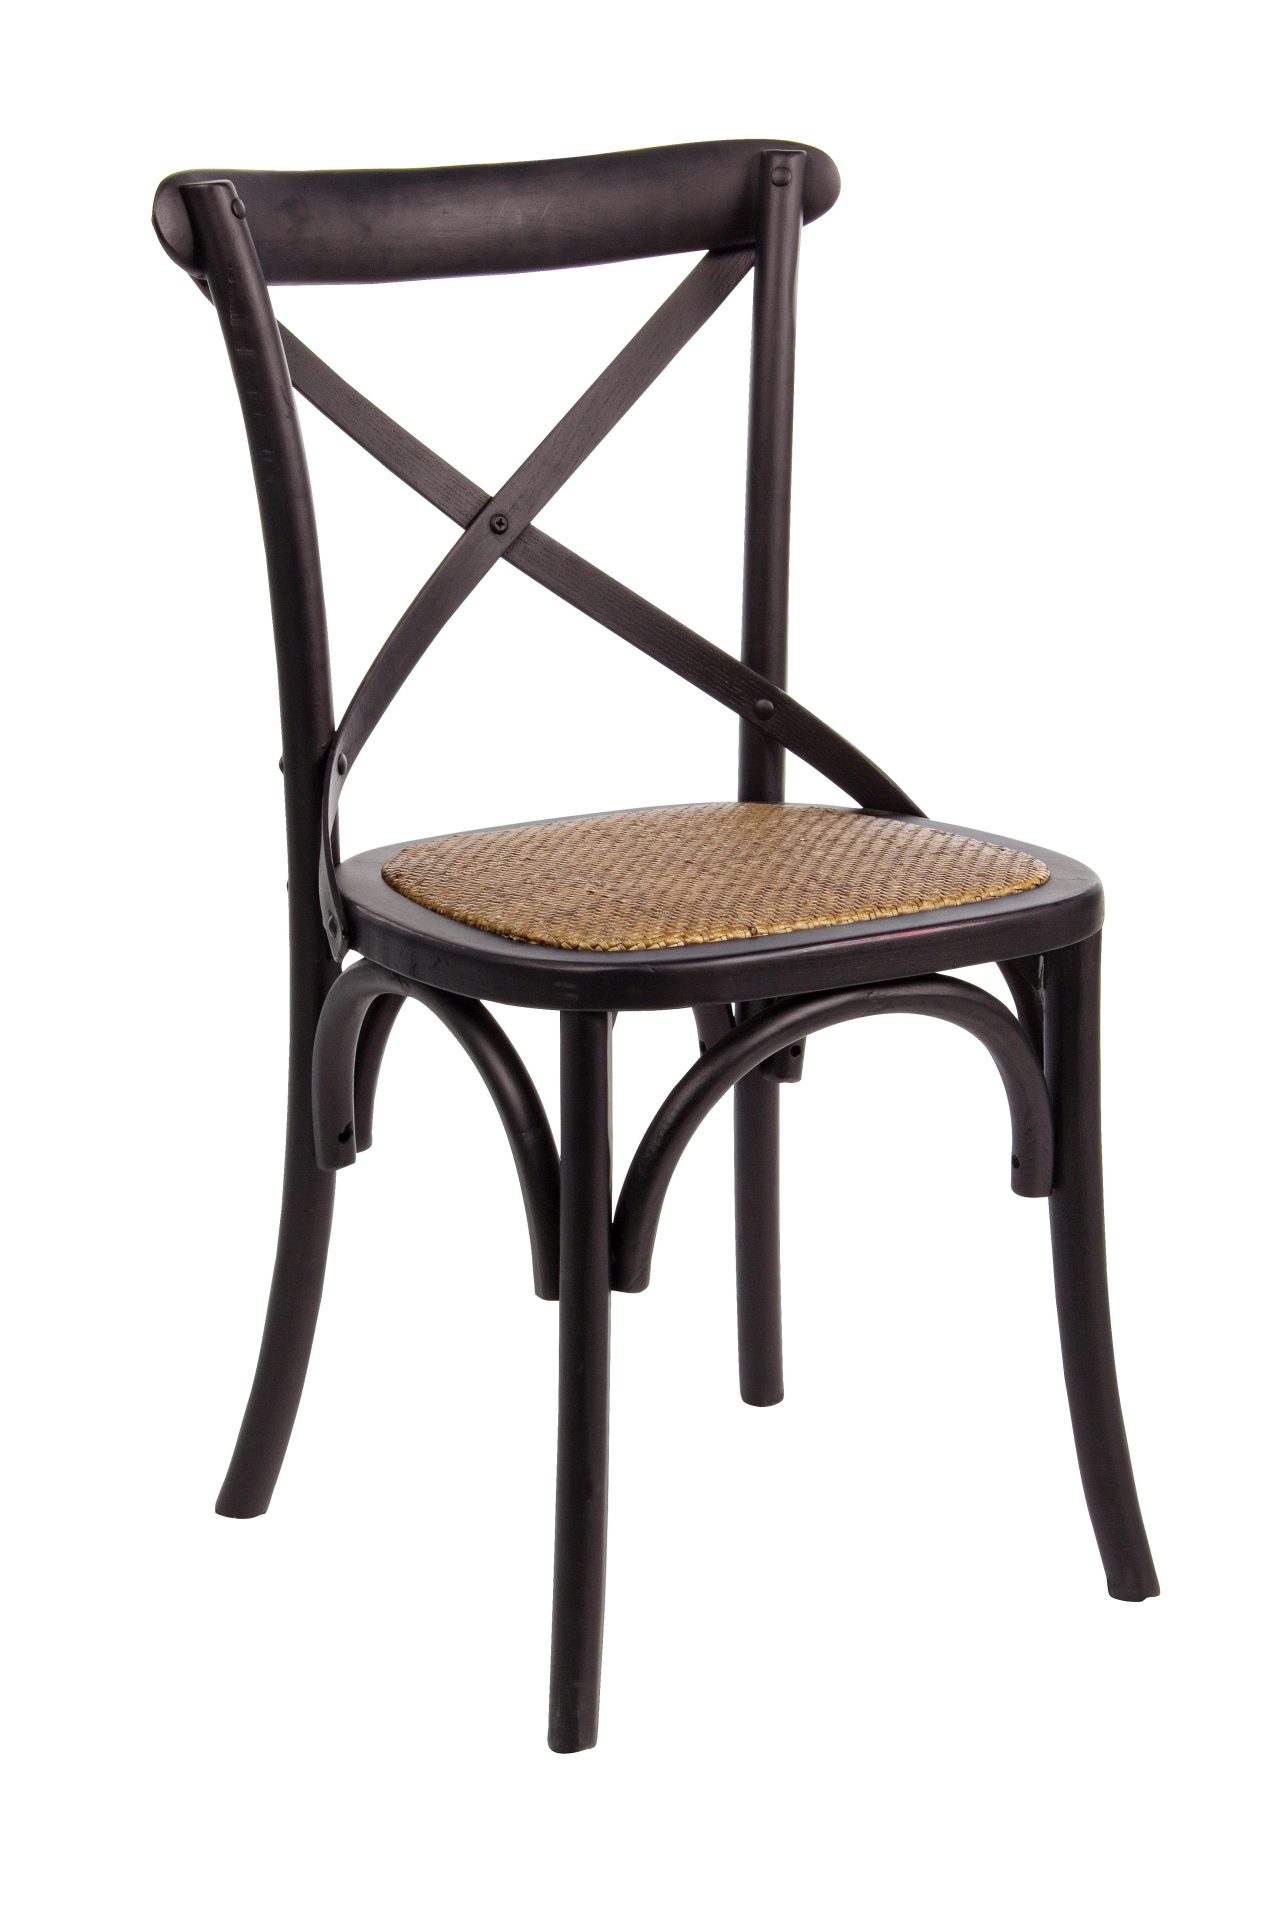 Der Stuhl Cross überzeugt mit seinem klassischen Design. Gefertigt wurde der Stuhl aus Ulmenholz, welches einen schwarzen Farbton besitzt. Die Sitz- und Rückenfläche ist aus Rattan gefertigt. Die Sitzhöhe beträgt 46 cm.